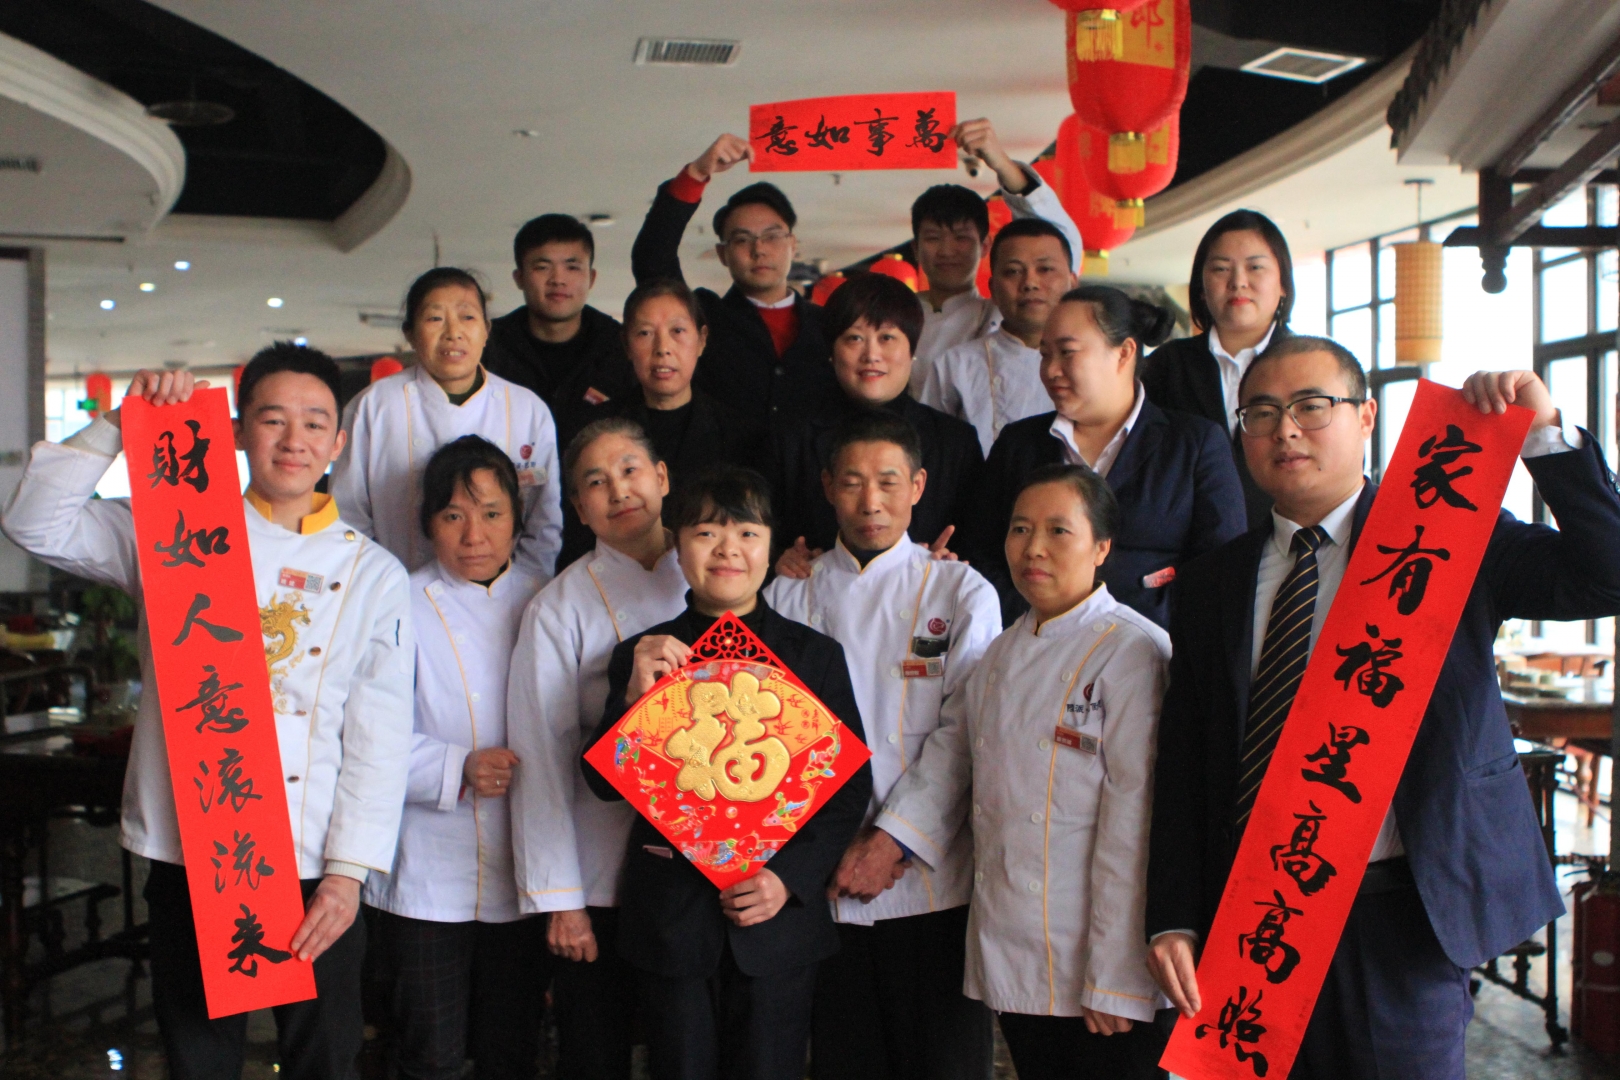 重庆王一汉餐饮发展有限公司 环境照片活动图片